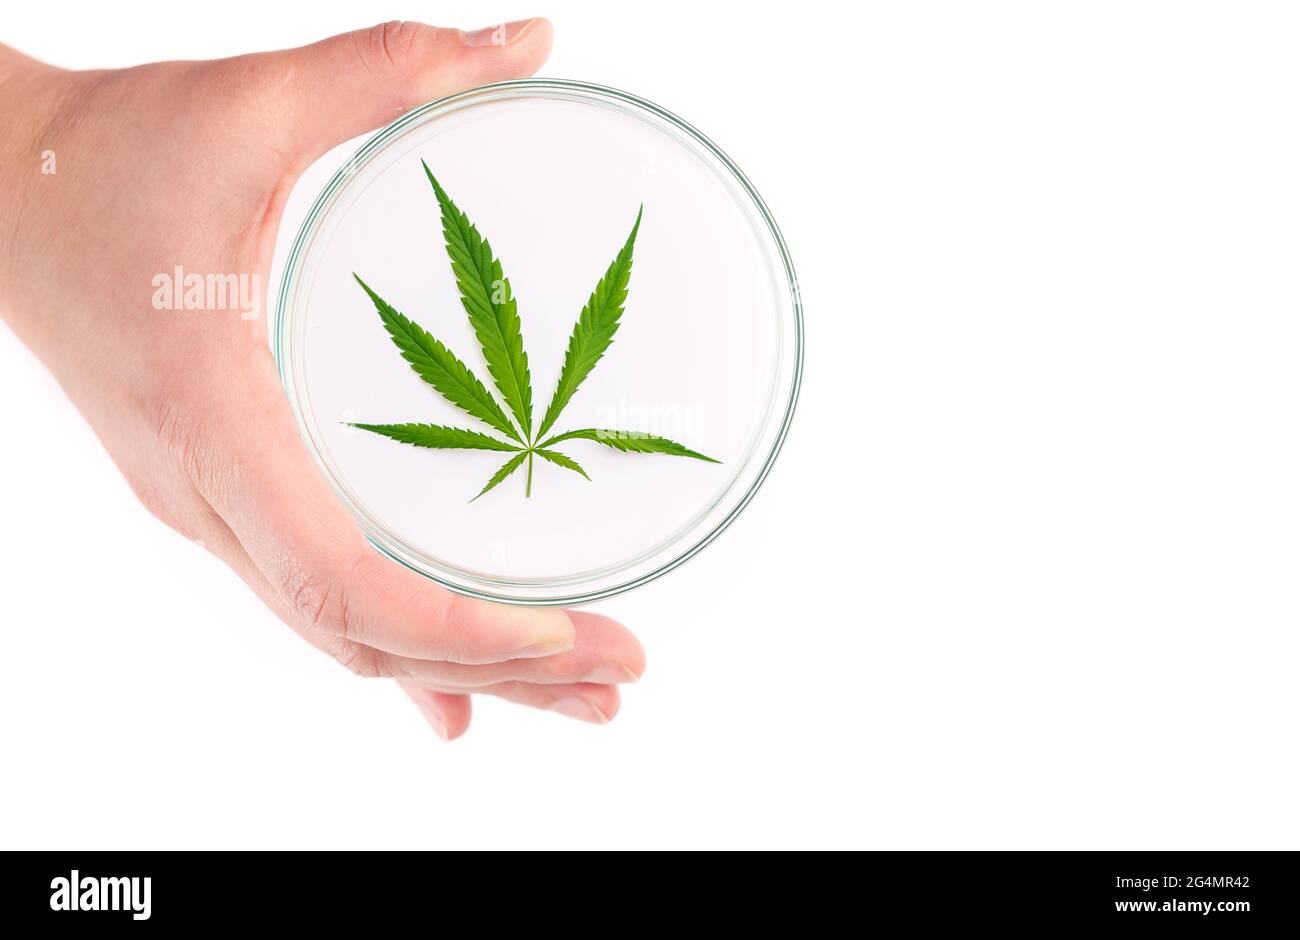 Marihuana-Cannabisblatt auf weißem Hintergrund in einer Petrischale. Heilpflanze, die Betäubungsmittel enthält Stockfoto